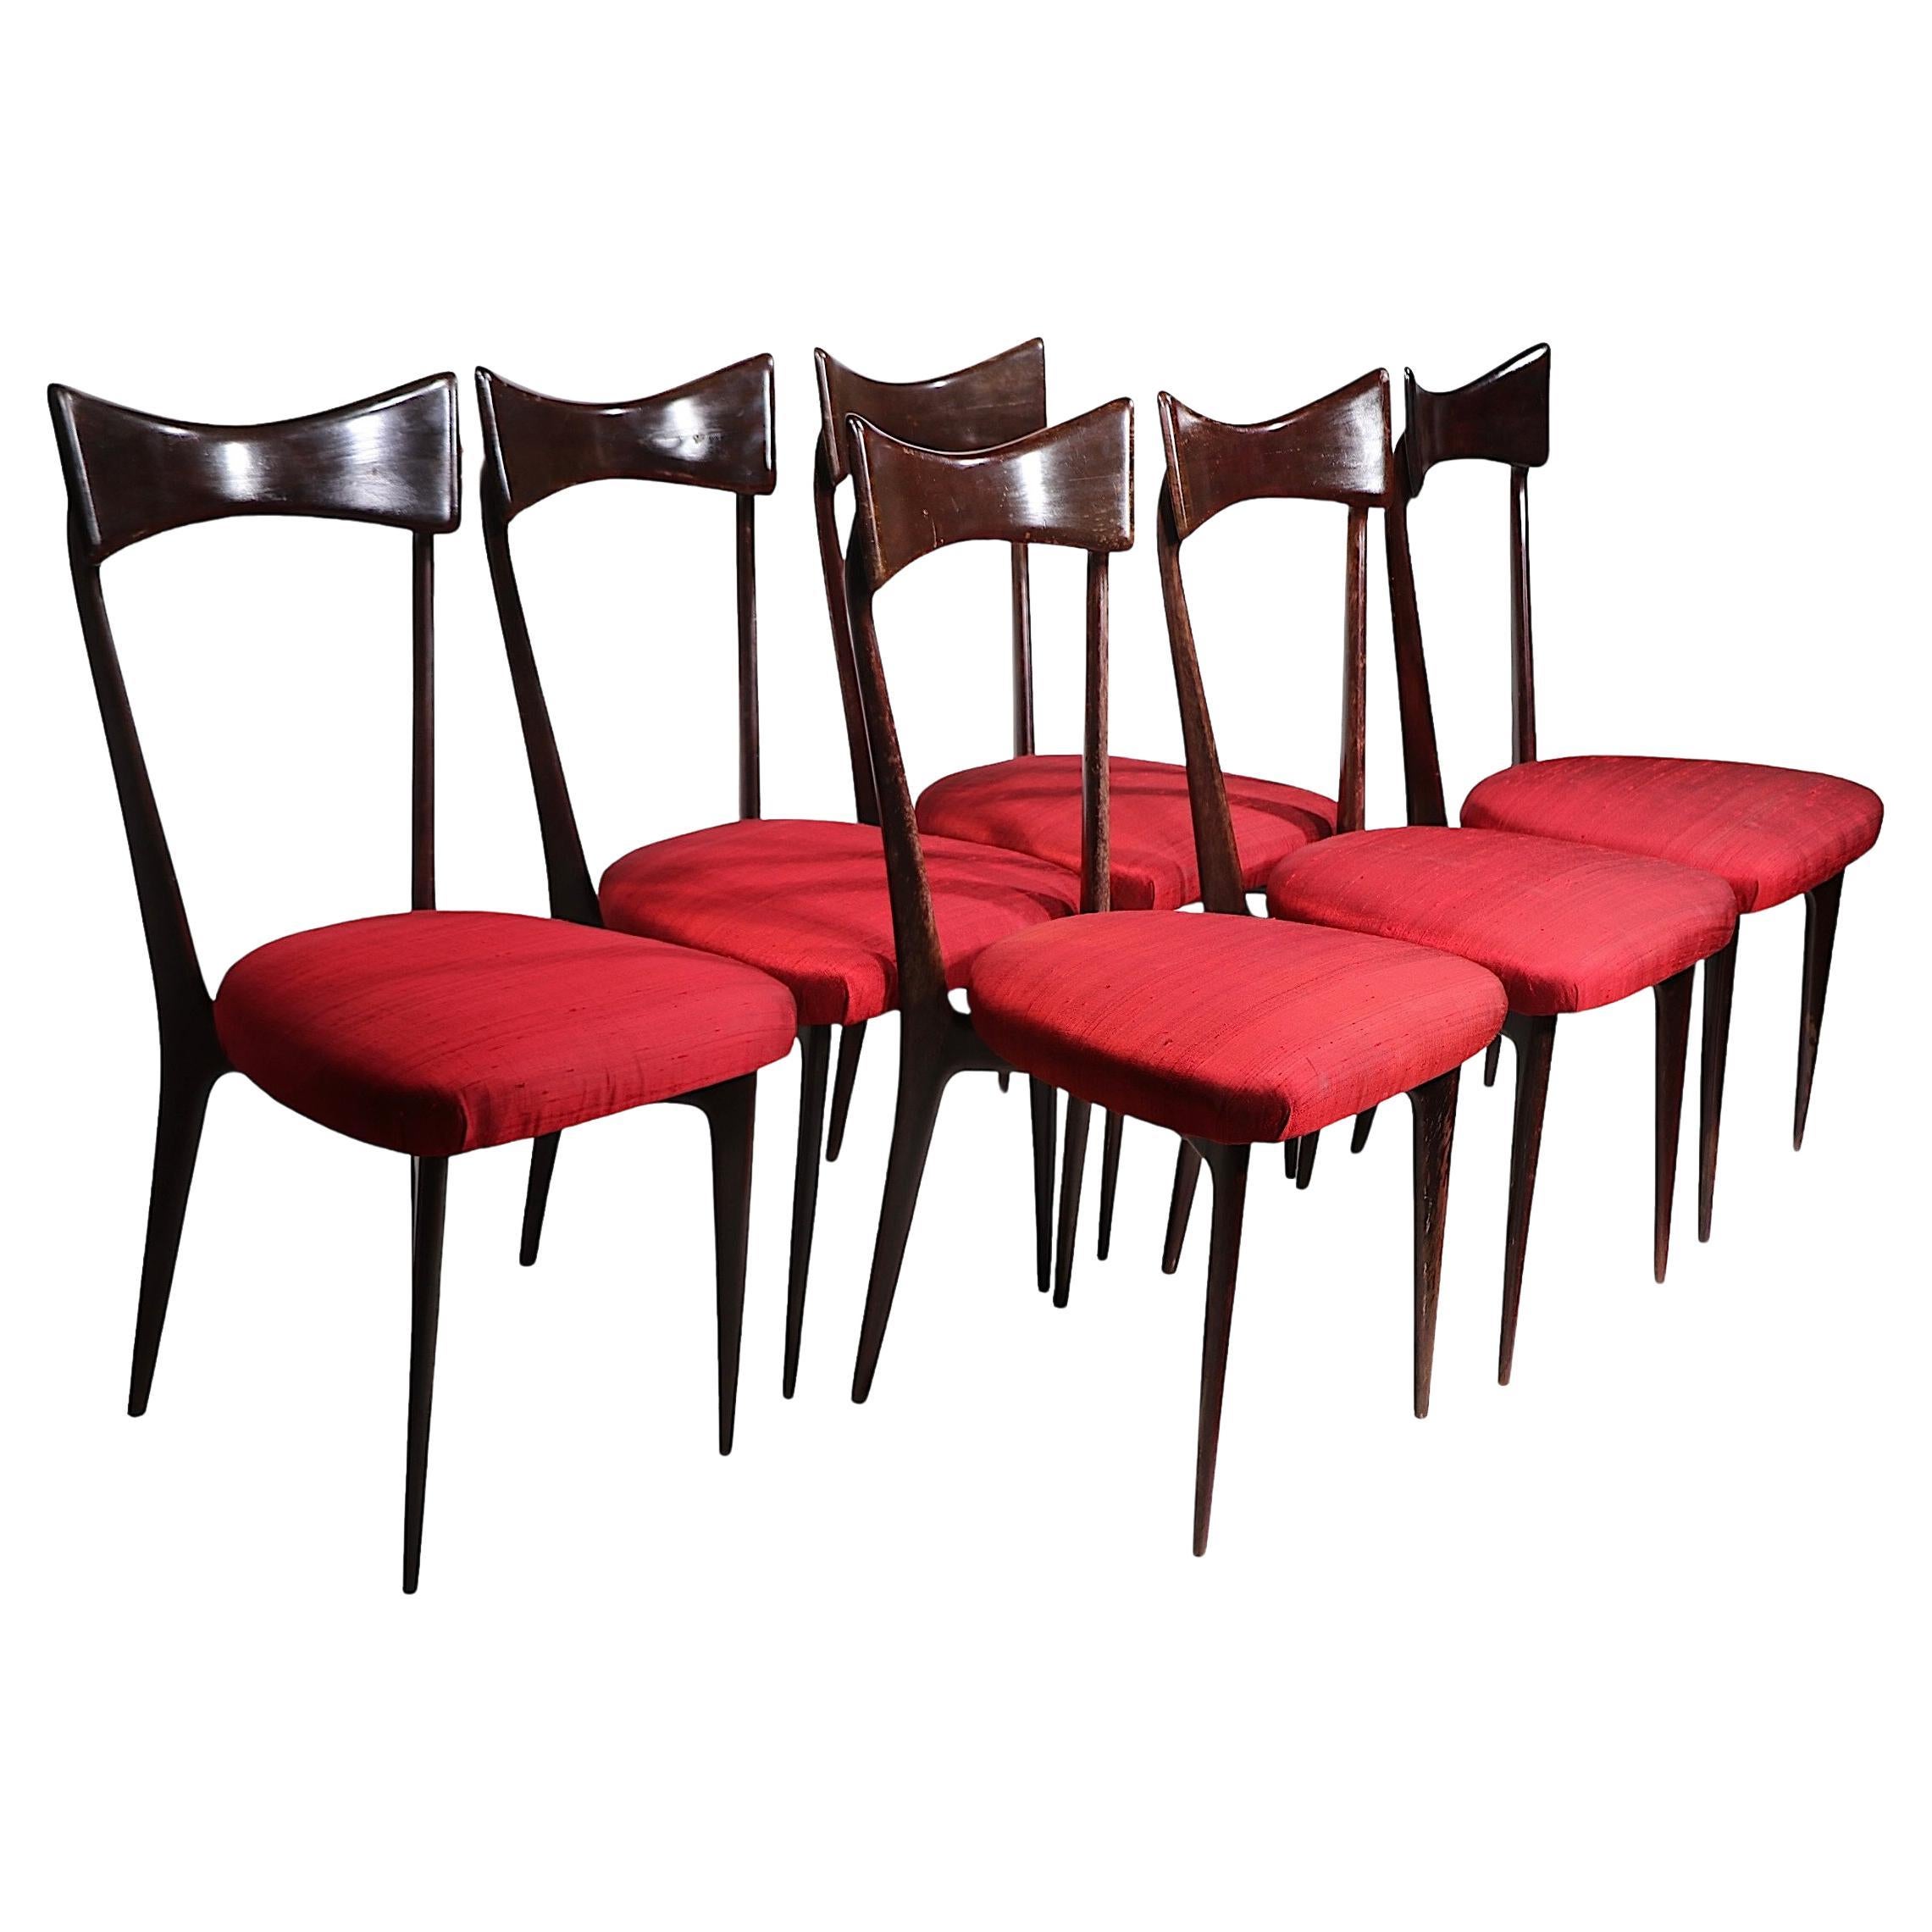 Sechs Stühle im Stil von Ico Parisi, hergestellt in Italien, 1950er Jahre